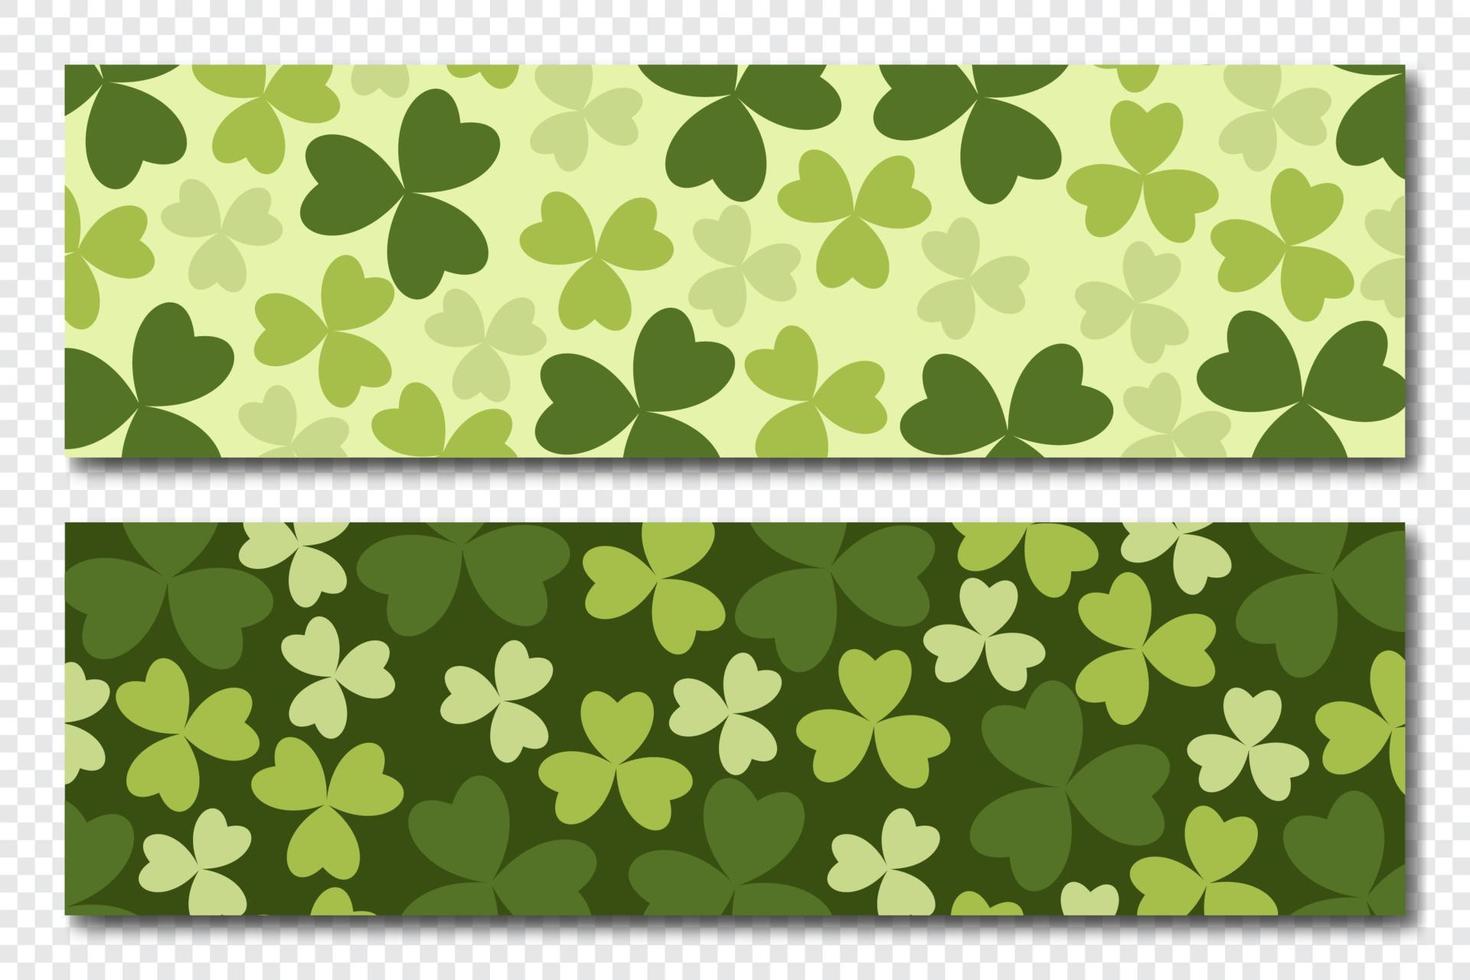 banderoller med vitklöver löv. realistisk grön klöver. vitklöver baner. horisontell bakgrund. vektor illustration